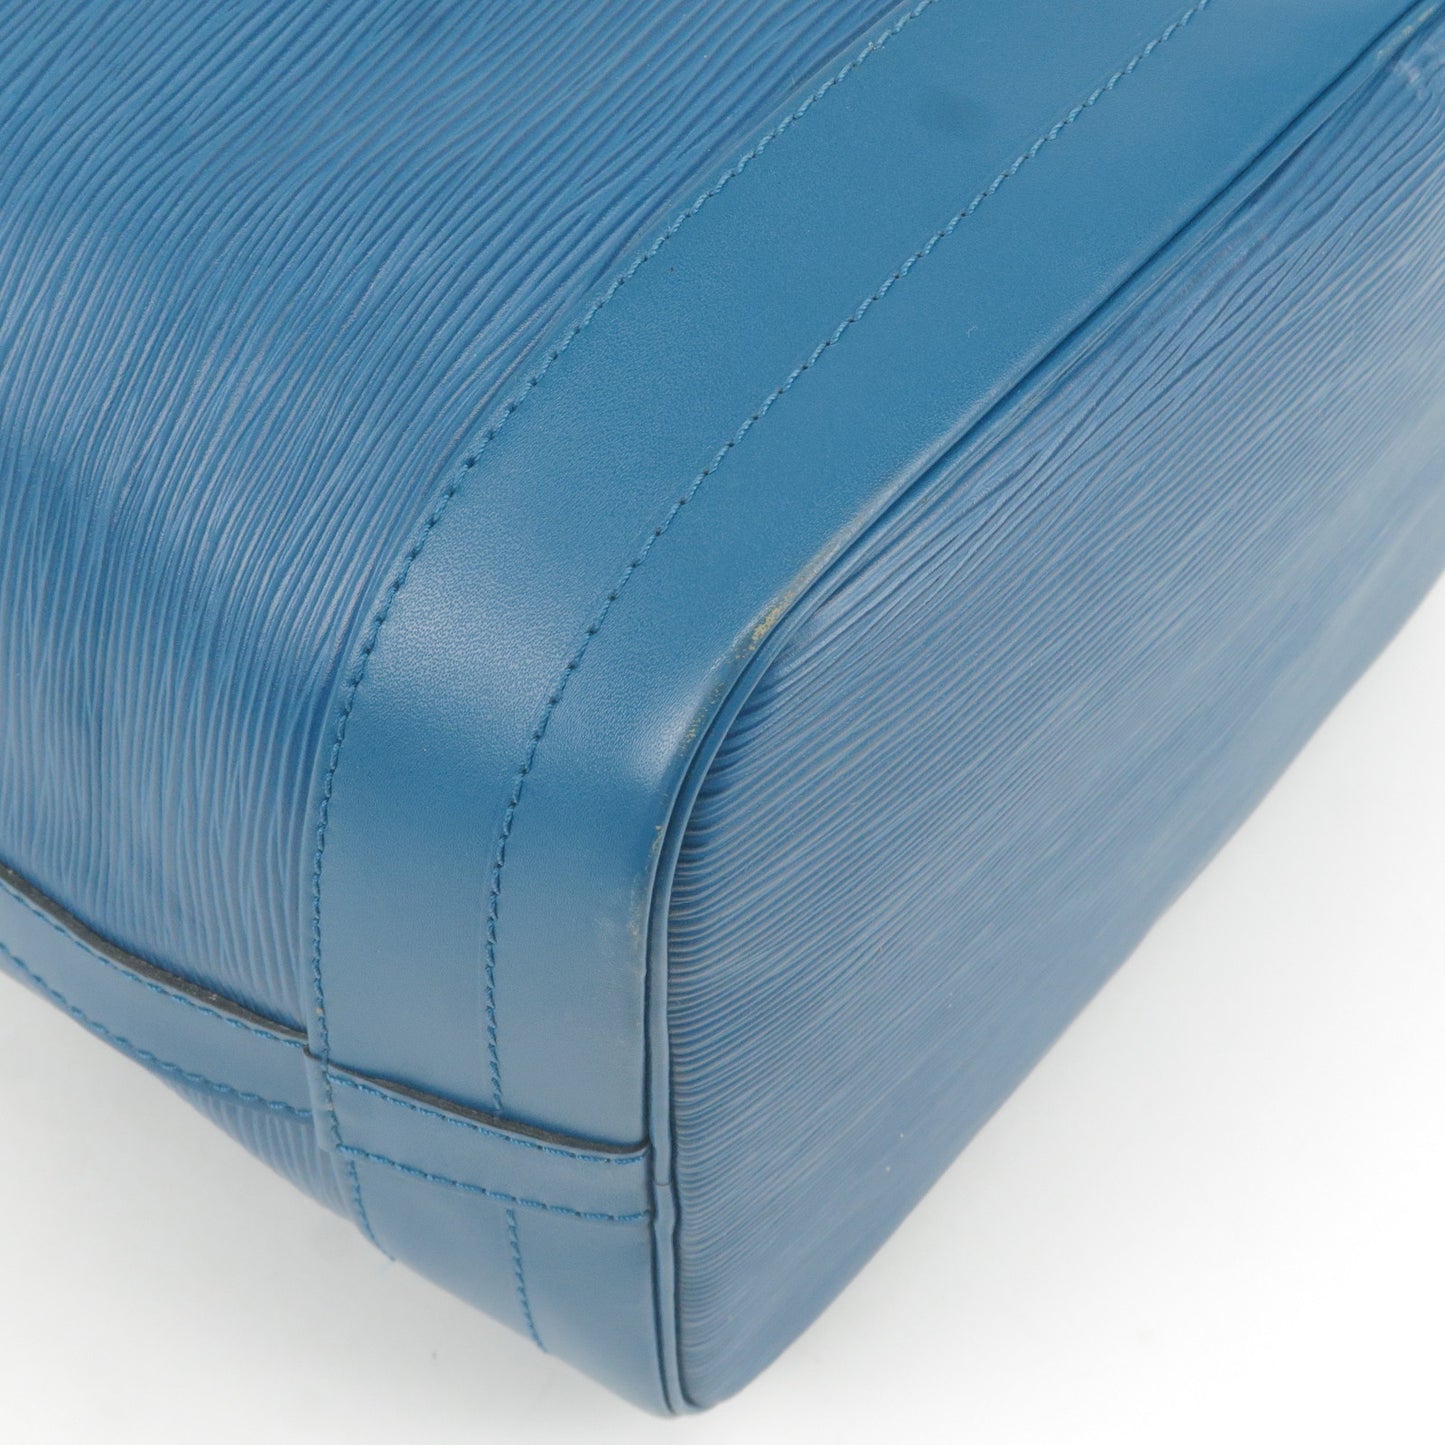 Louis Vuitton Epi Noe Shoulder Bag Toledo Blue M44005